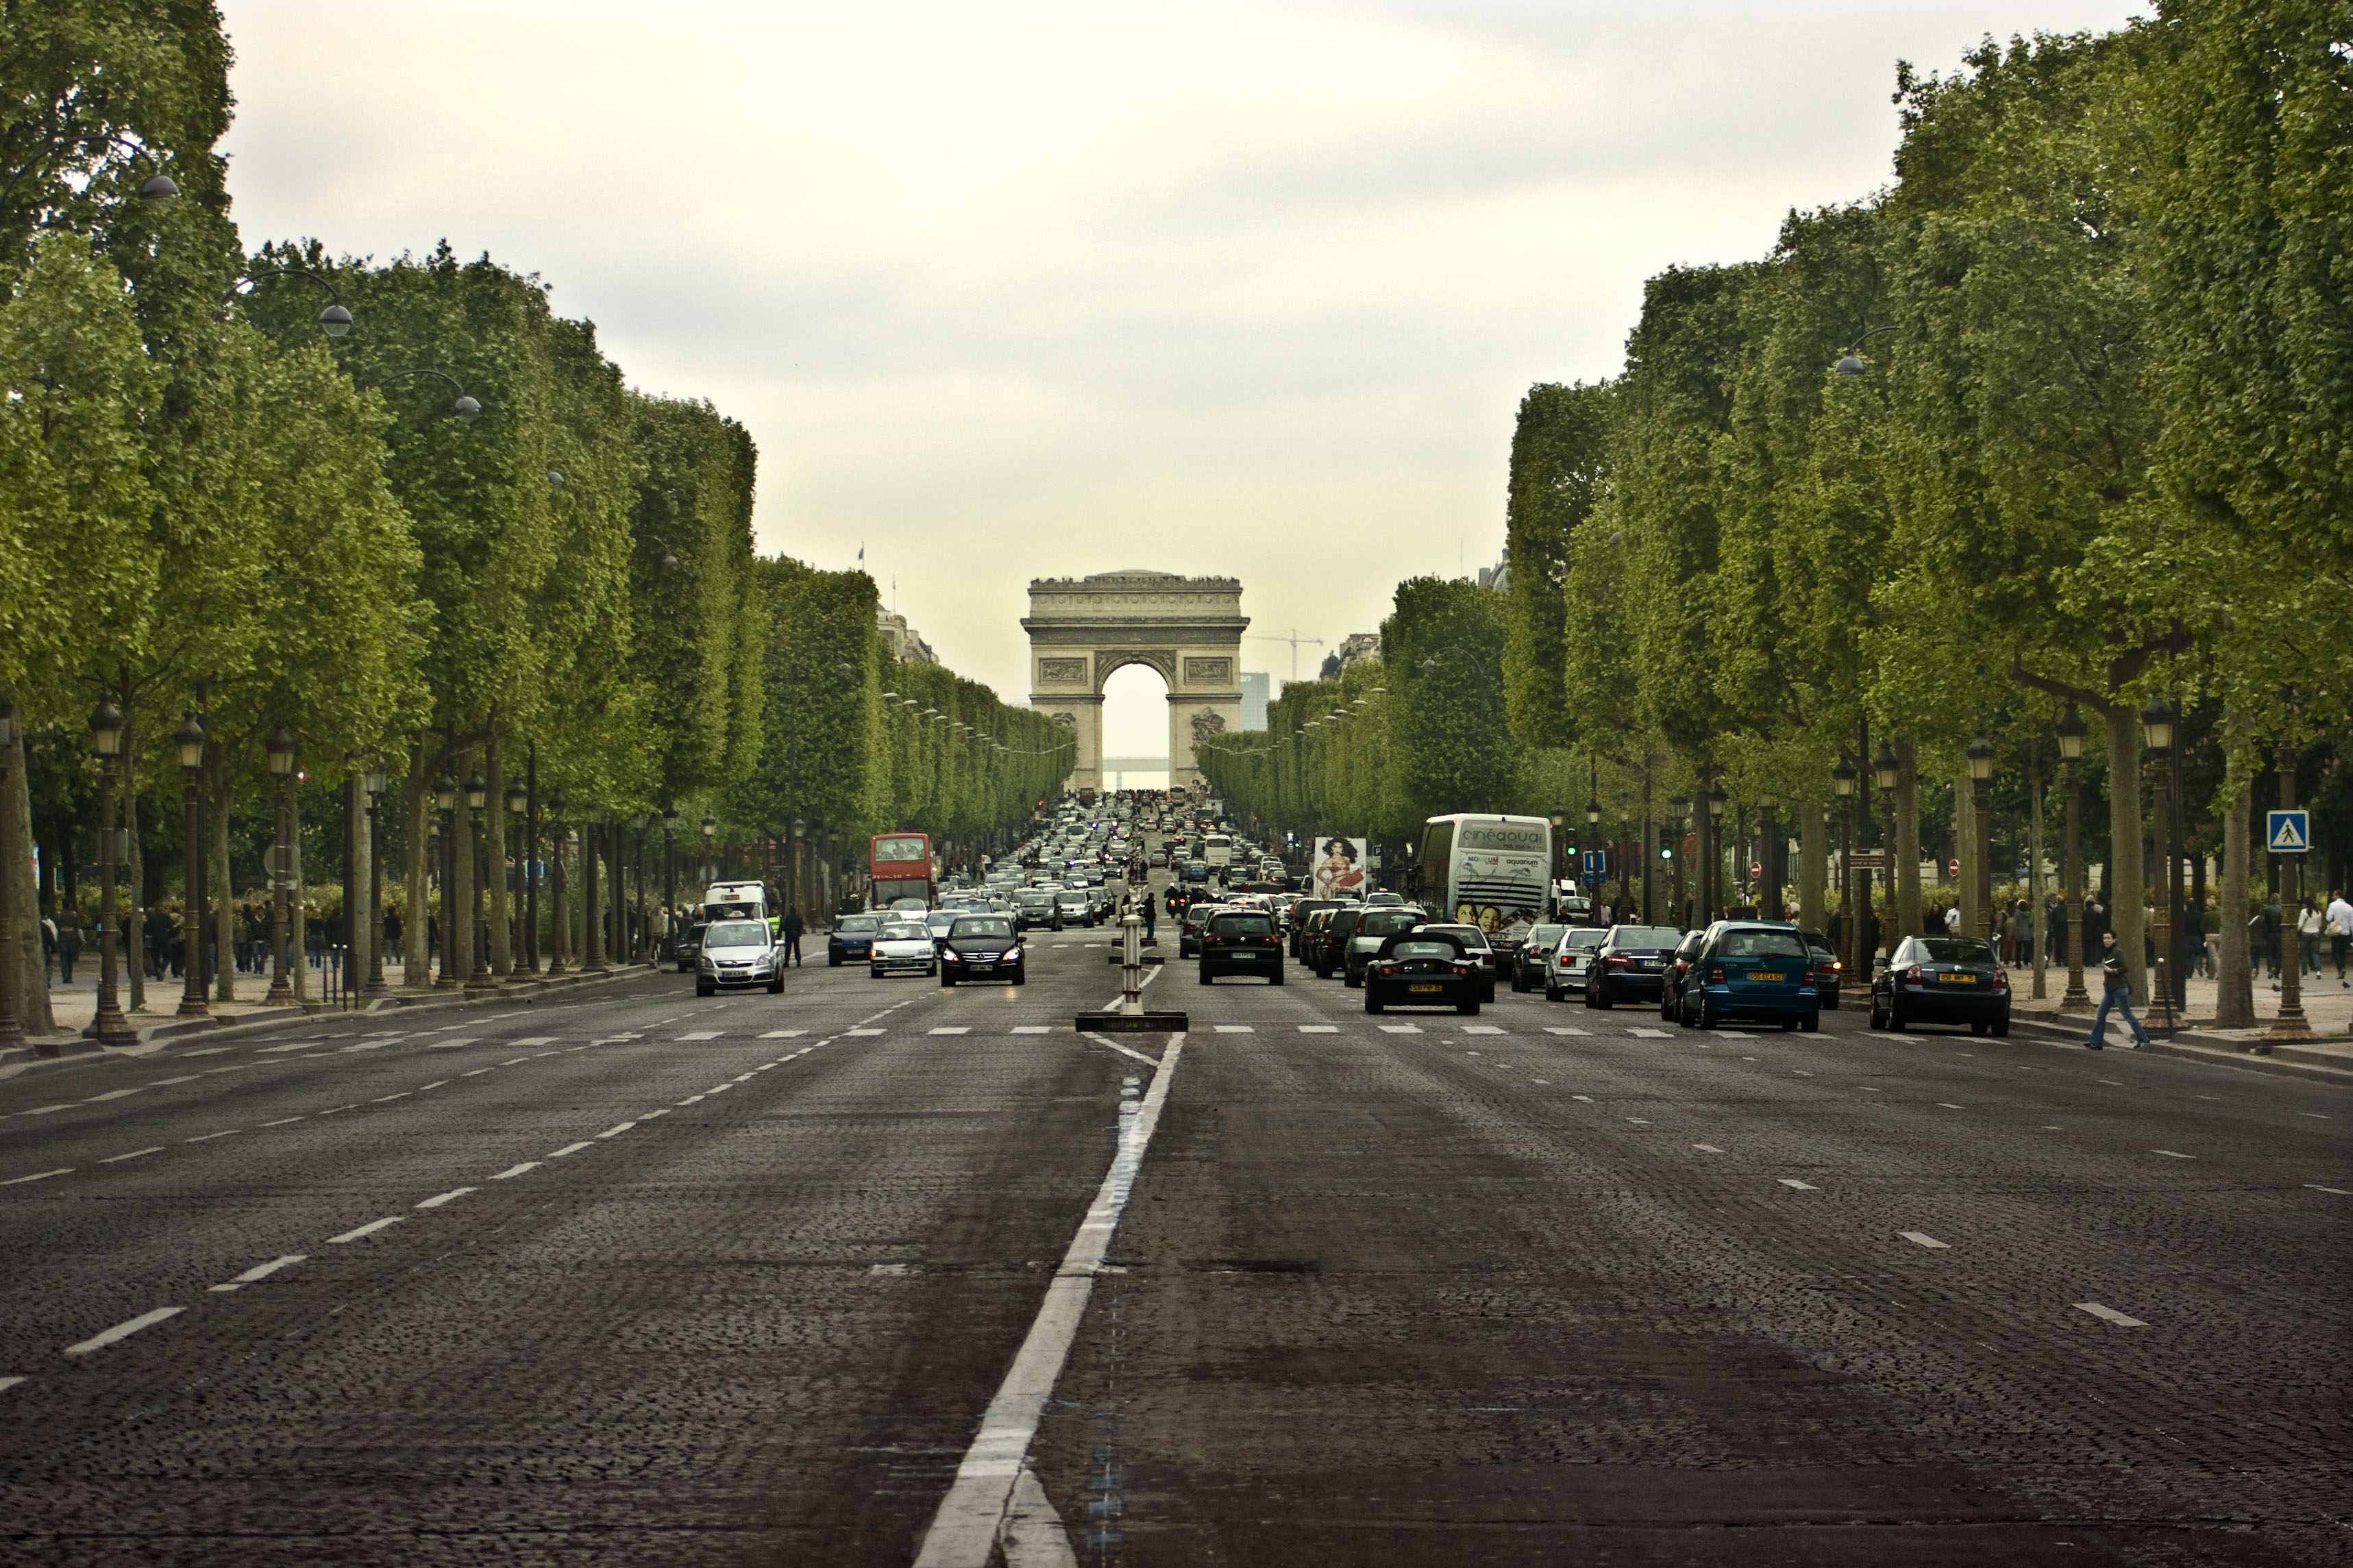 Paris City Tour - Avenue des Champs-Élysées